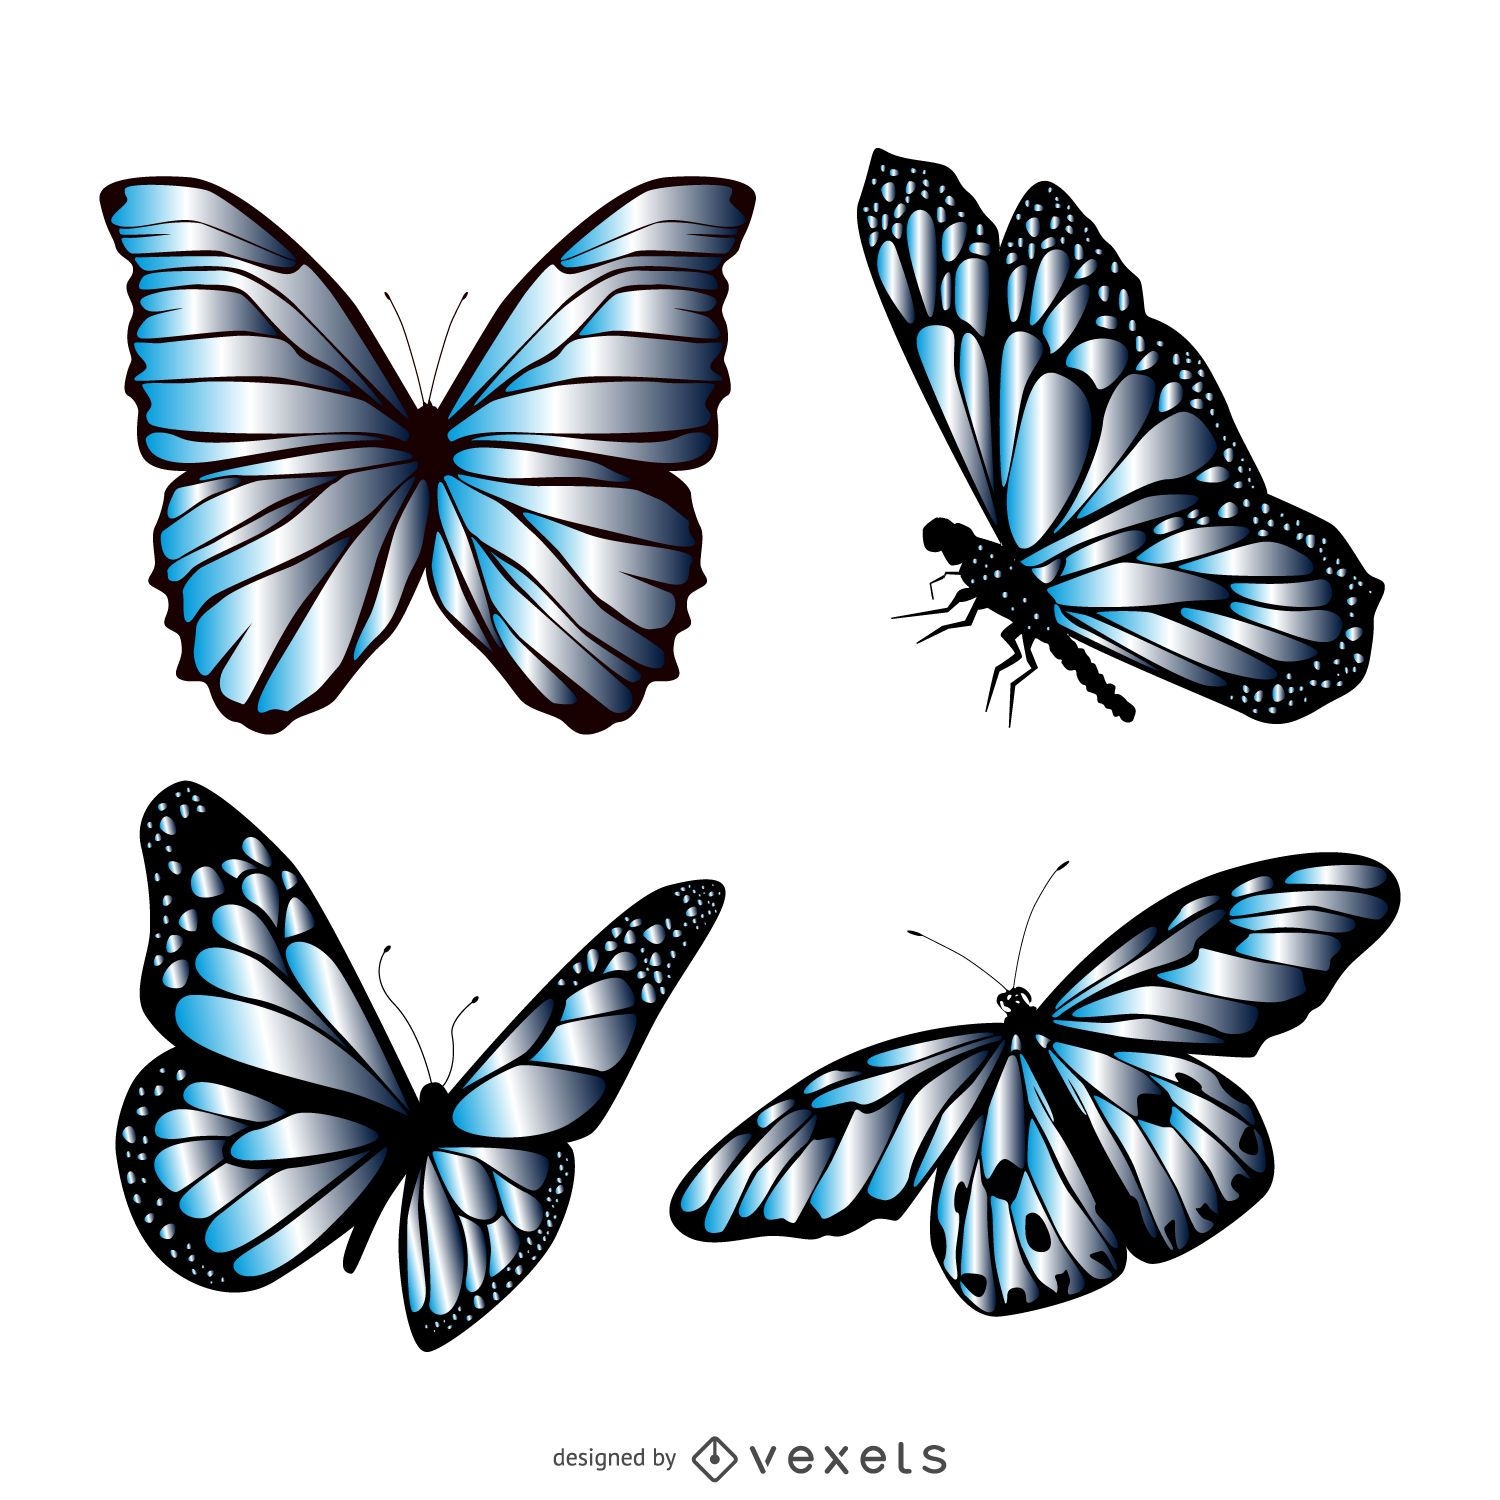 Blue butterfly illustration set